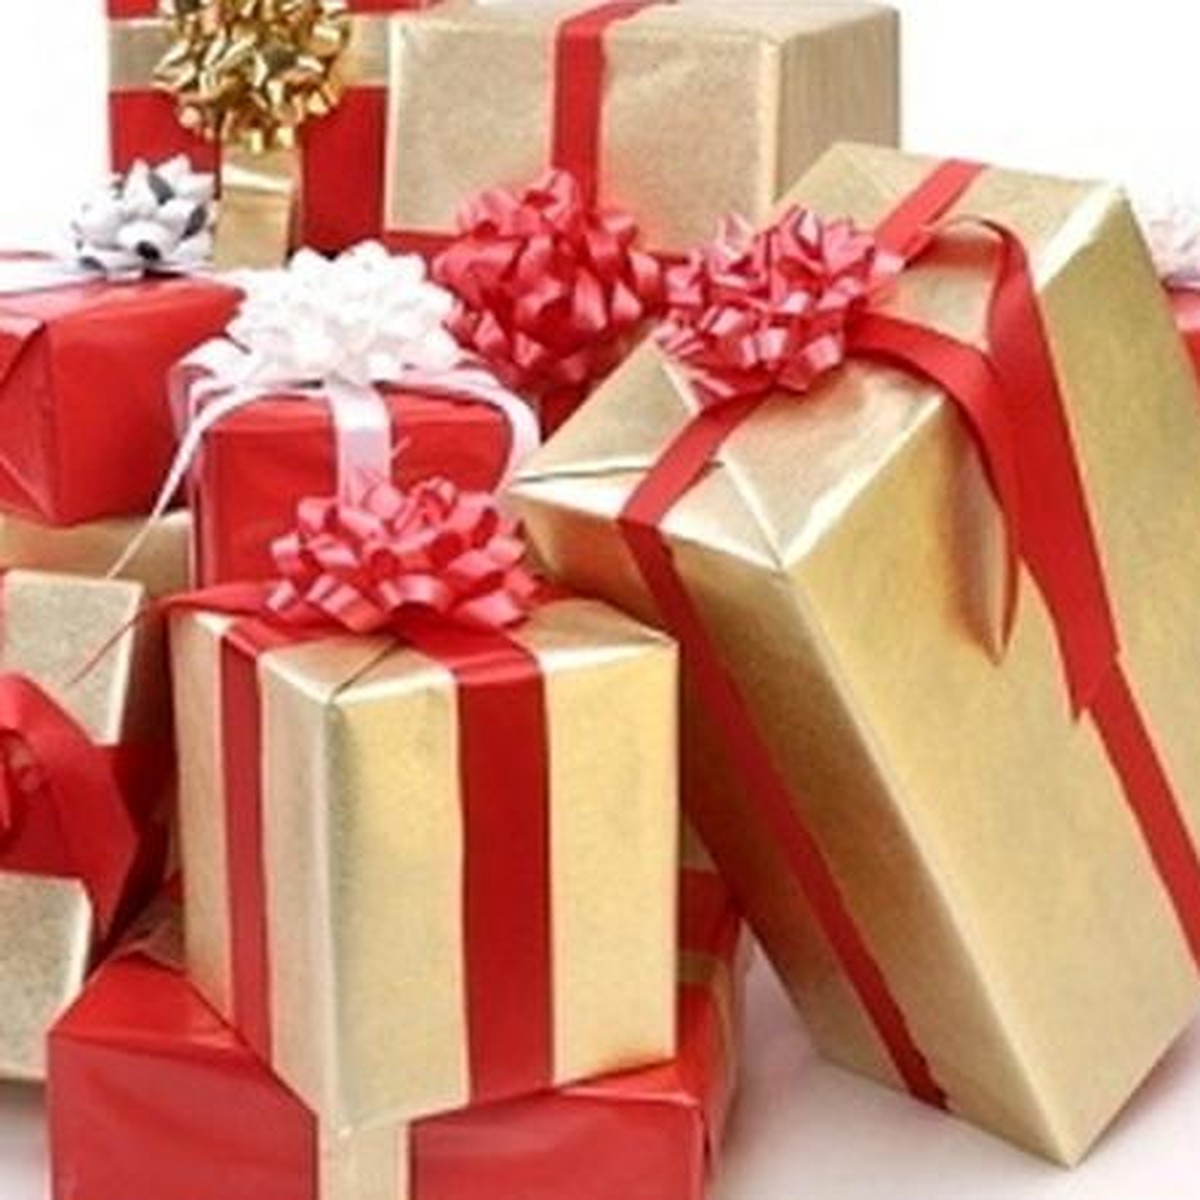 Почему важно делать самой себе подарки